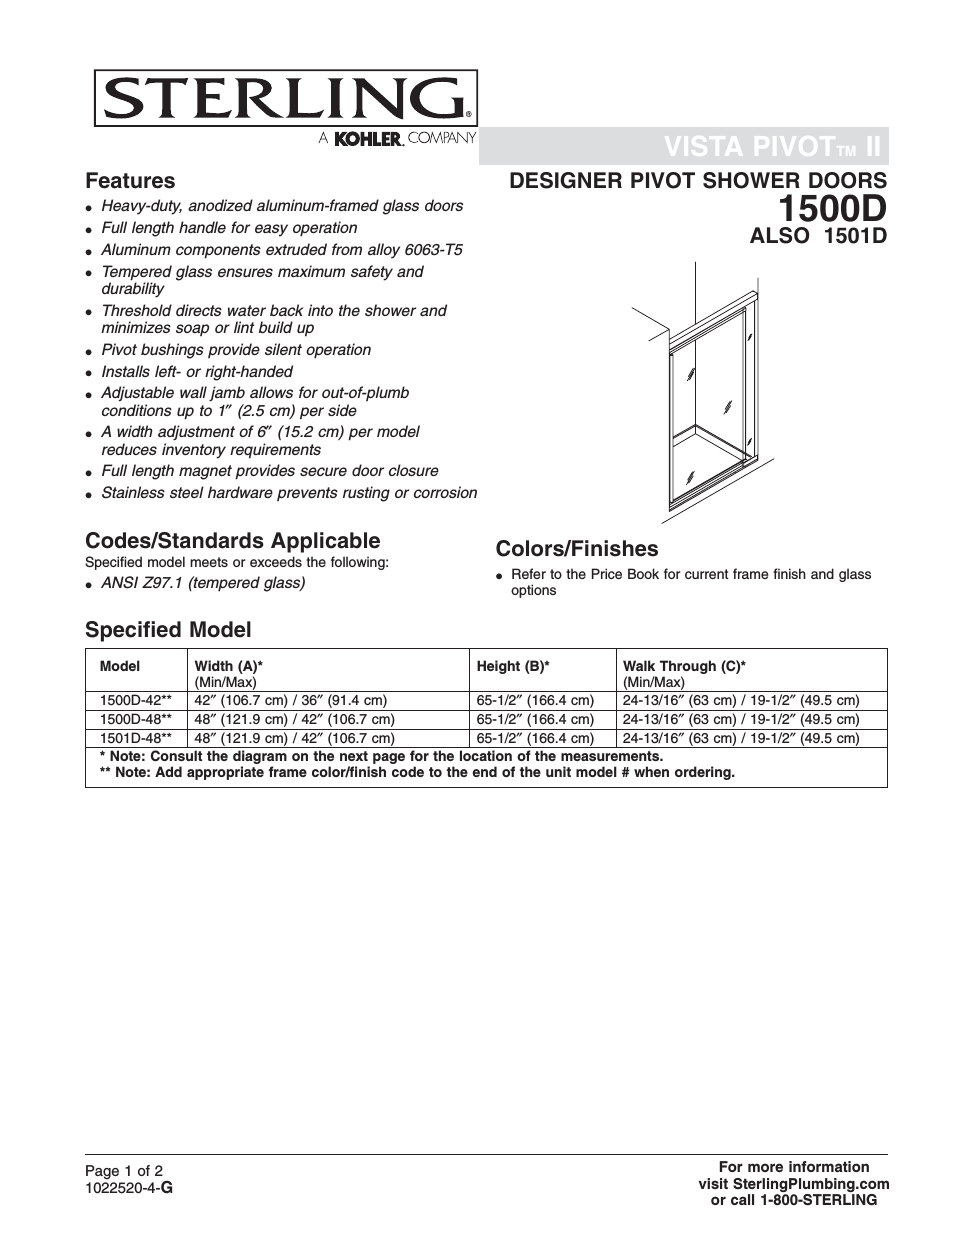 Designer Pivot Shower Doors 1501D